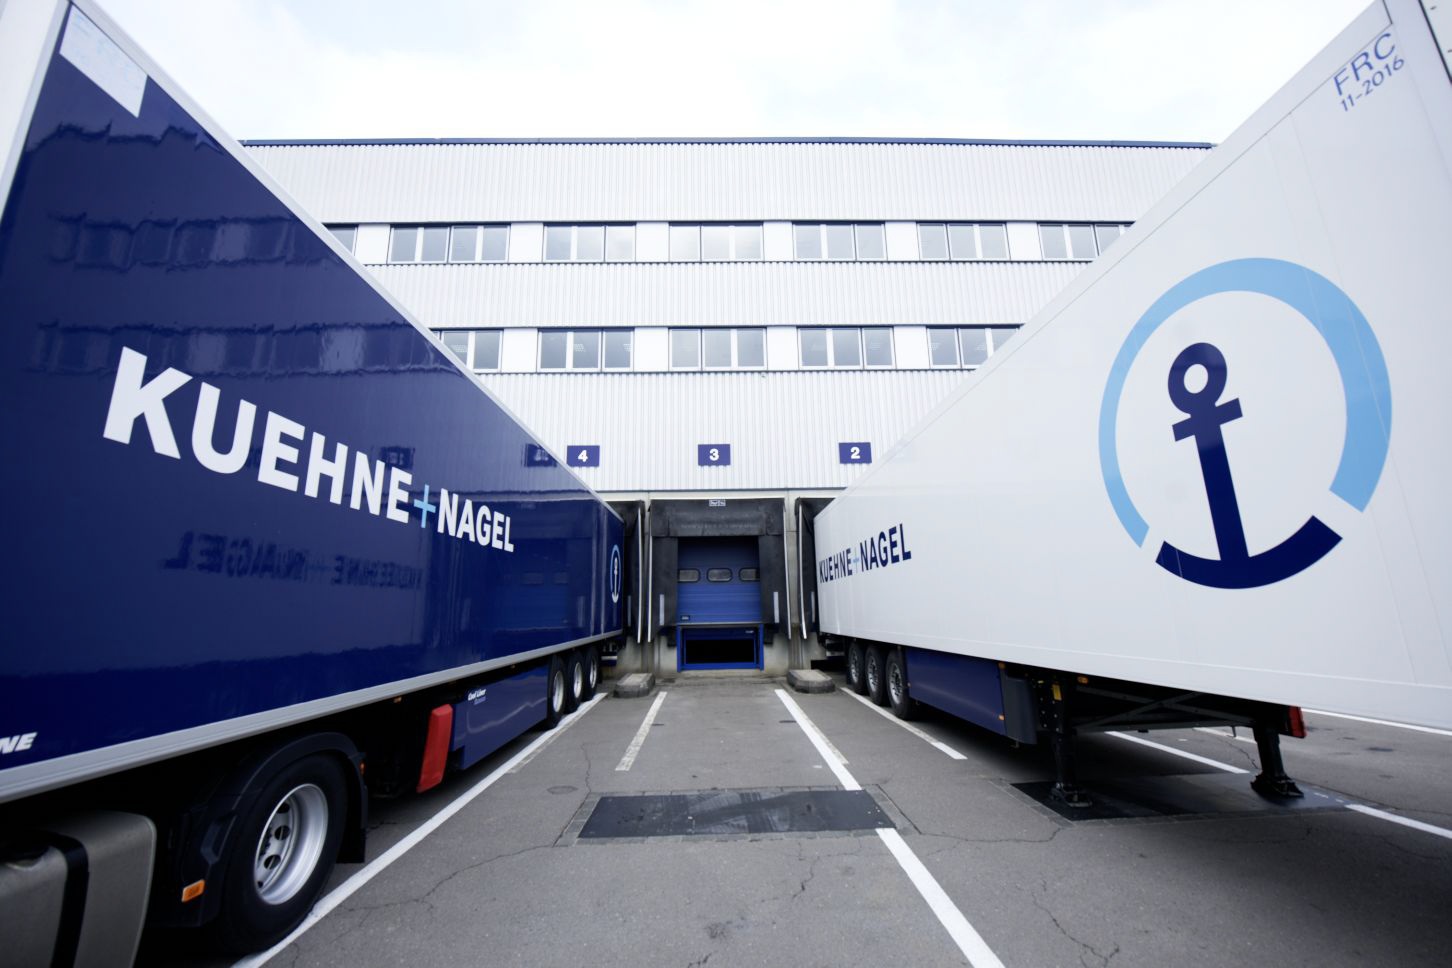 Kuehne+Nagel trucks August 2018